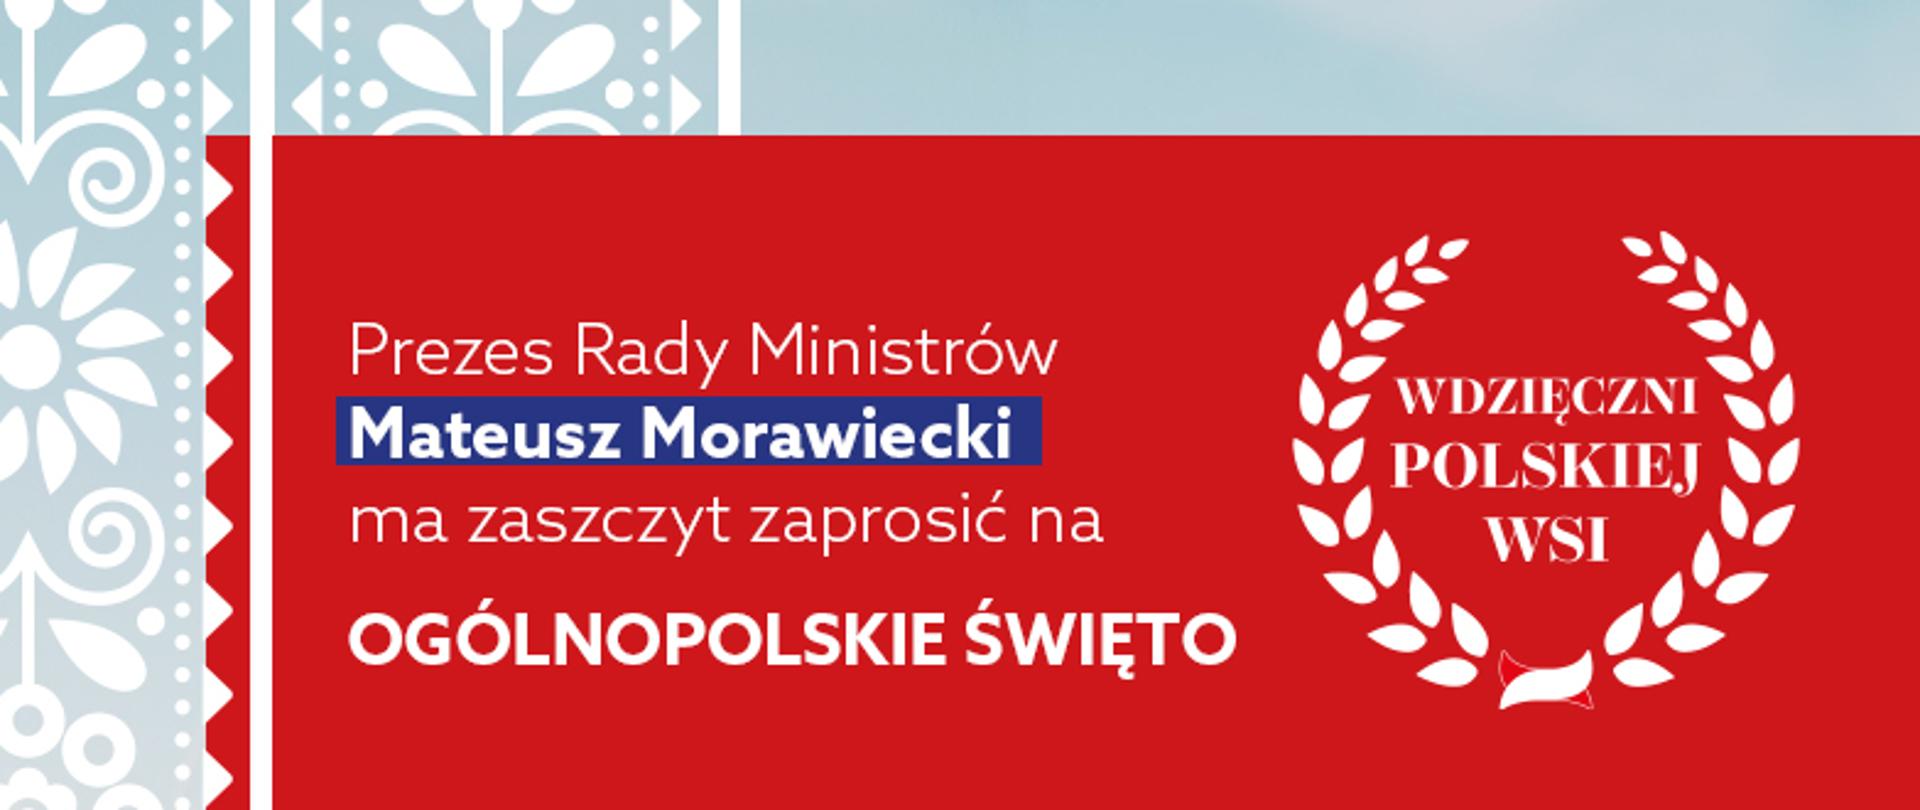 Wdzięczni Polskiej Wsi.